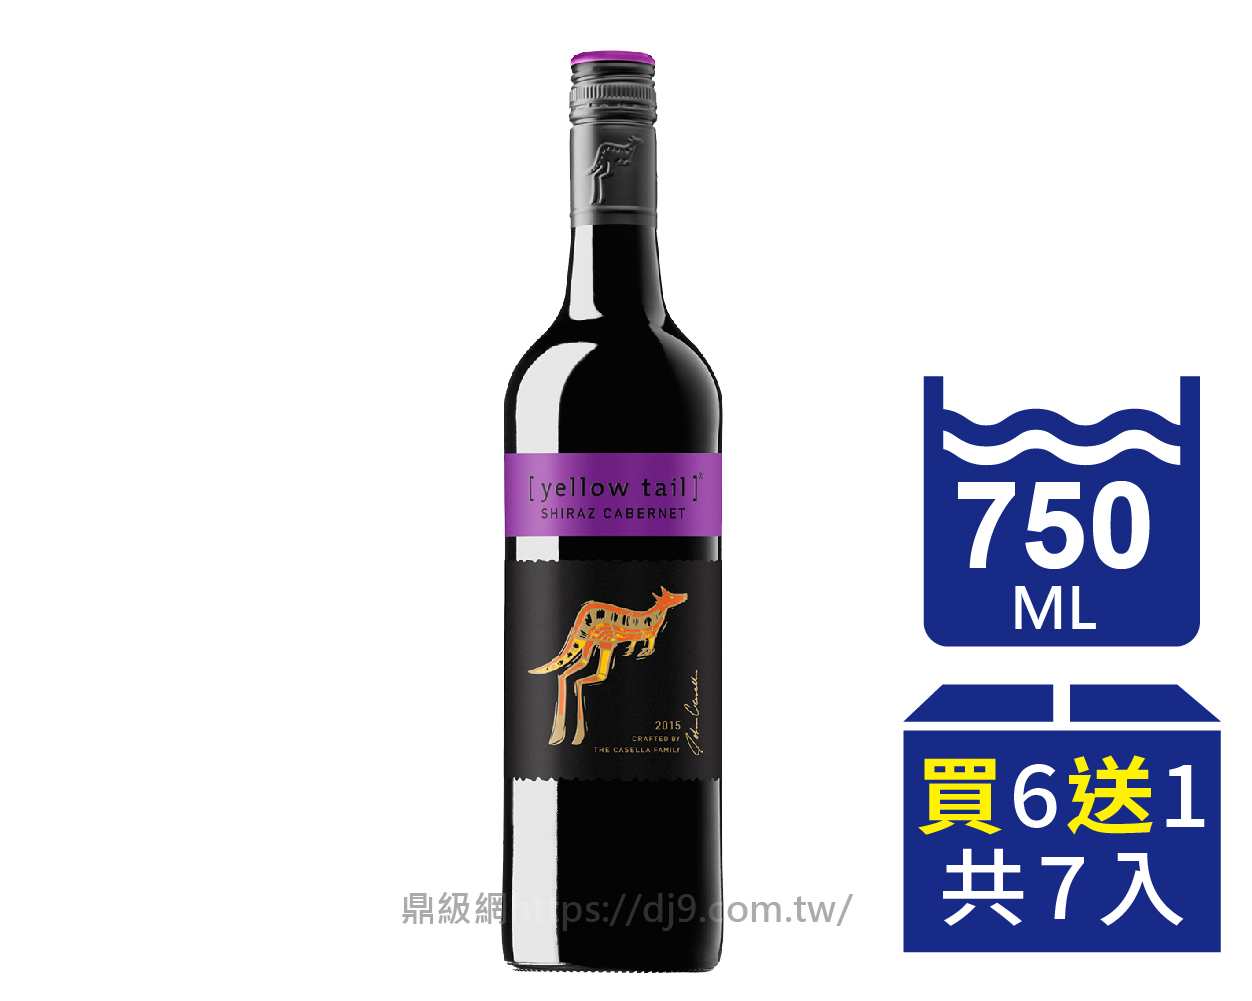 【箱購優惠】黃尾袋鼠 喜若卡貝納紅葡萄酒(380元x6瓶送1瓶)